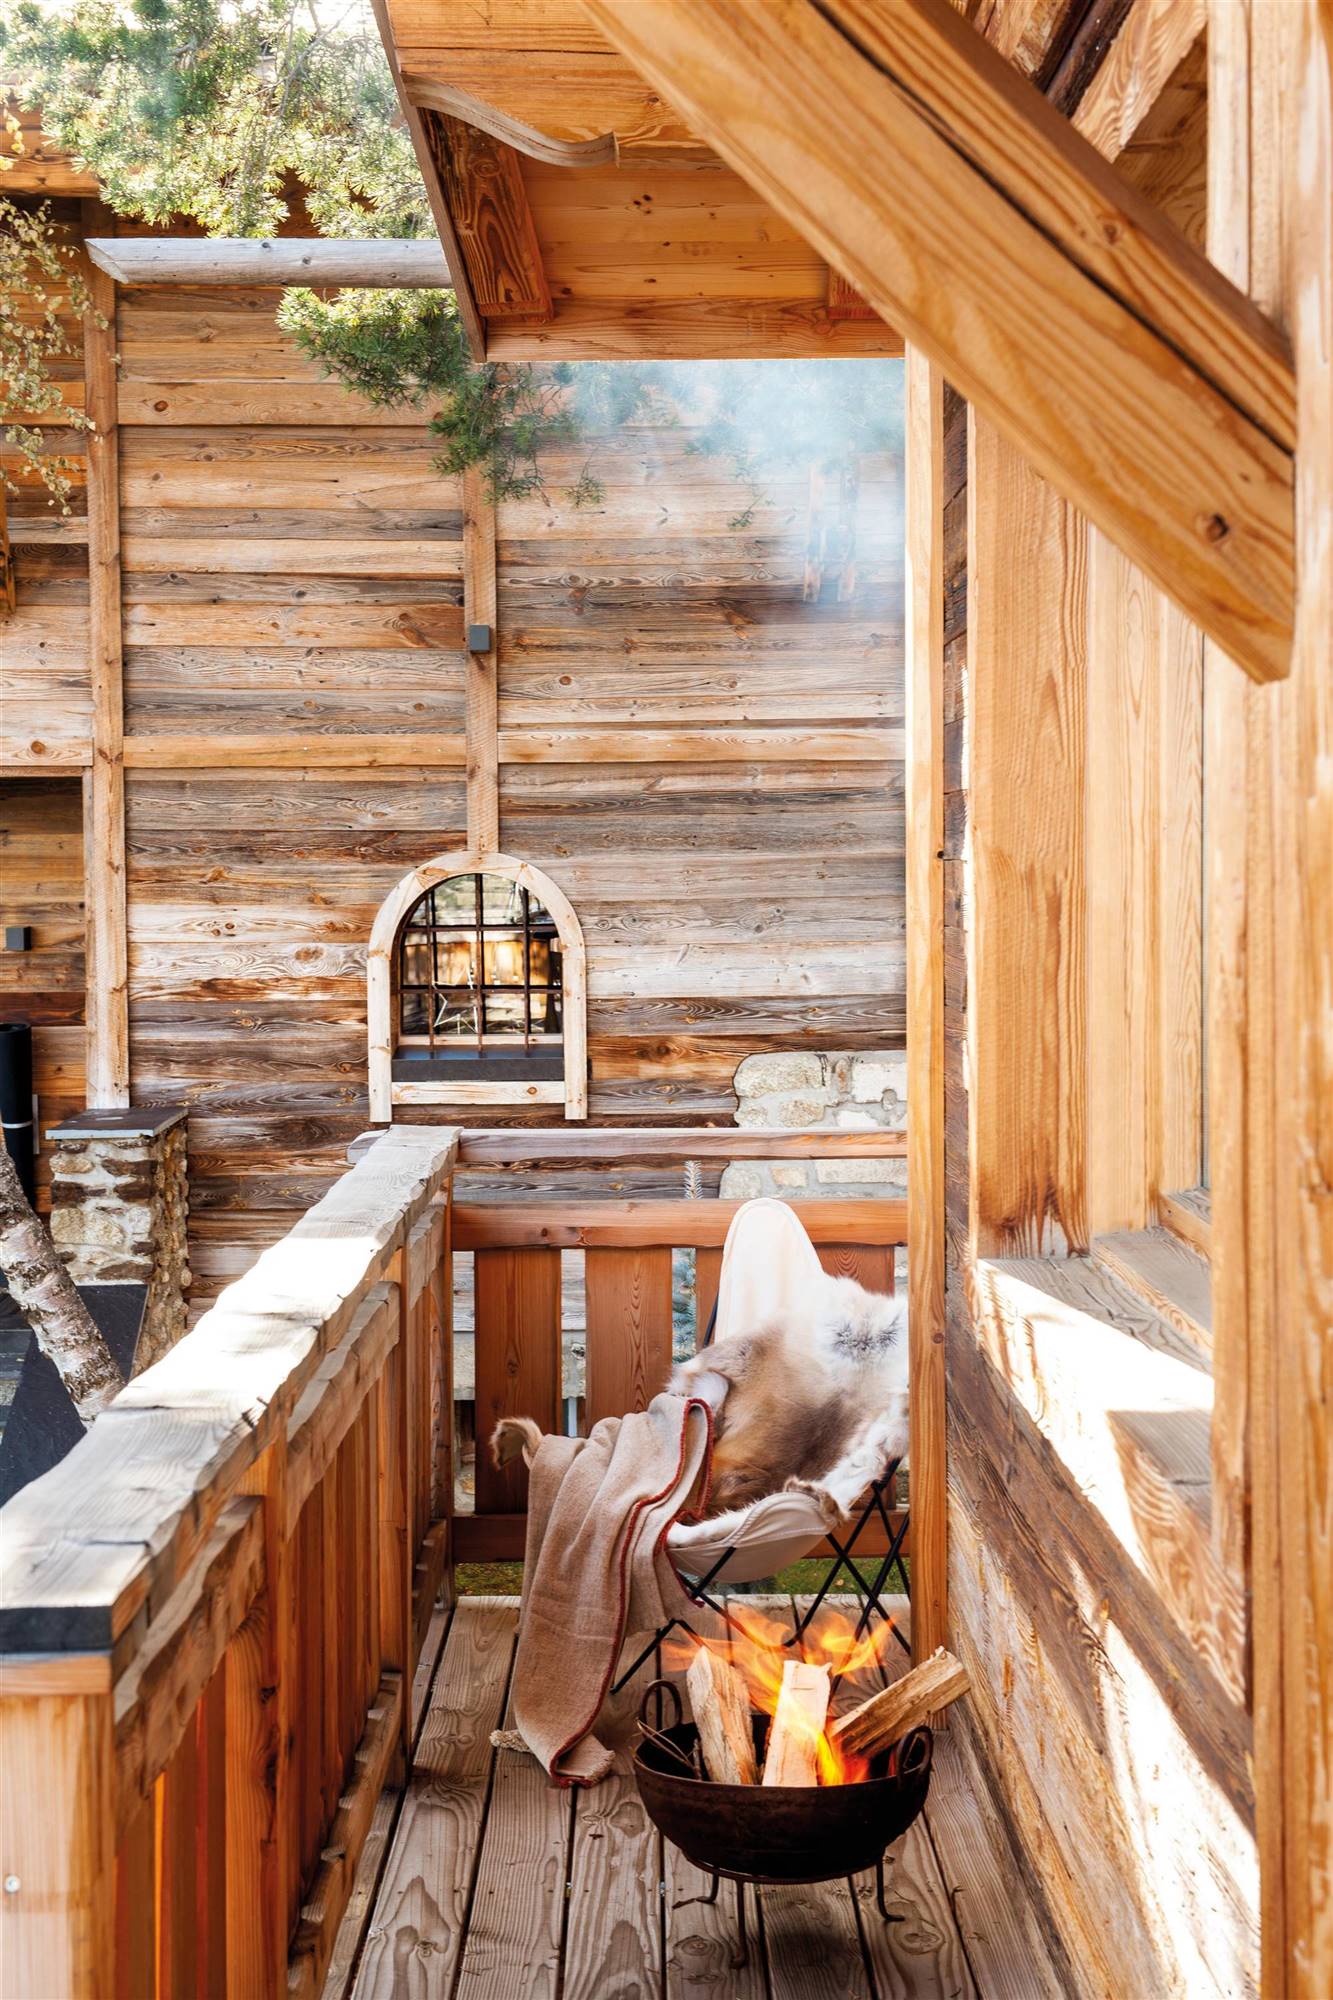 Terraza de madera tipo cabaña con estufa de leña.